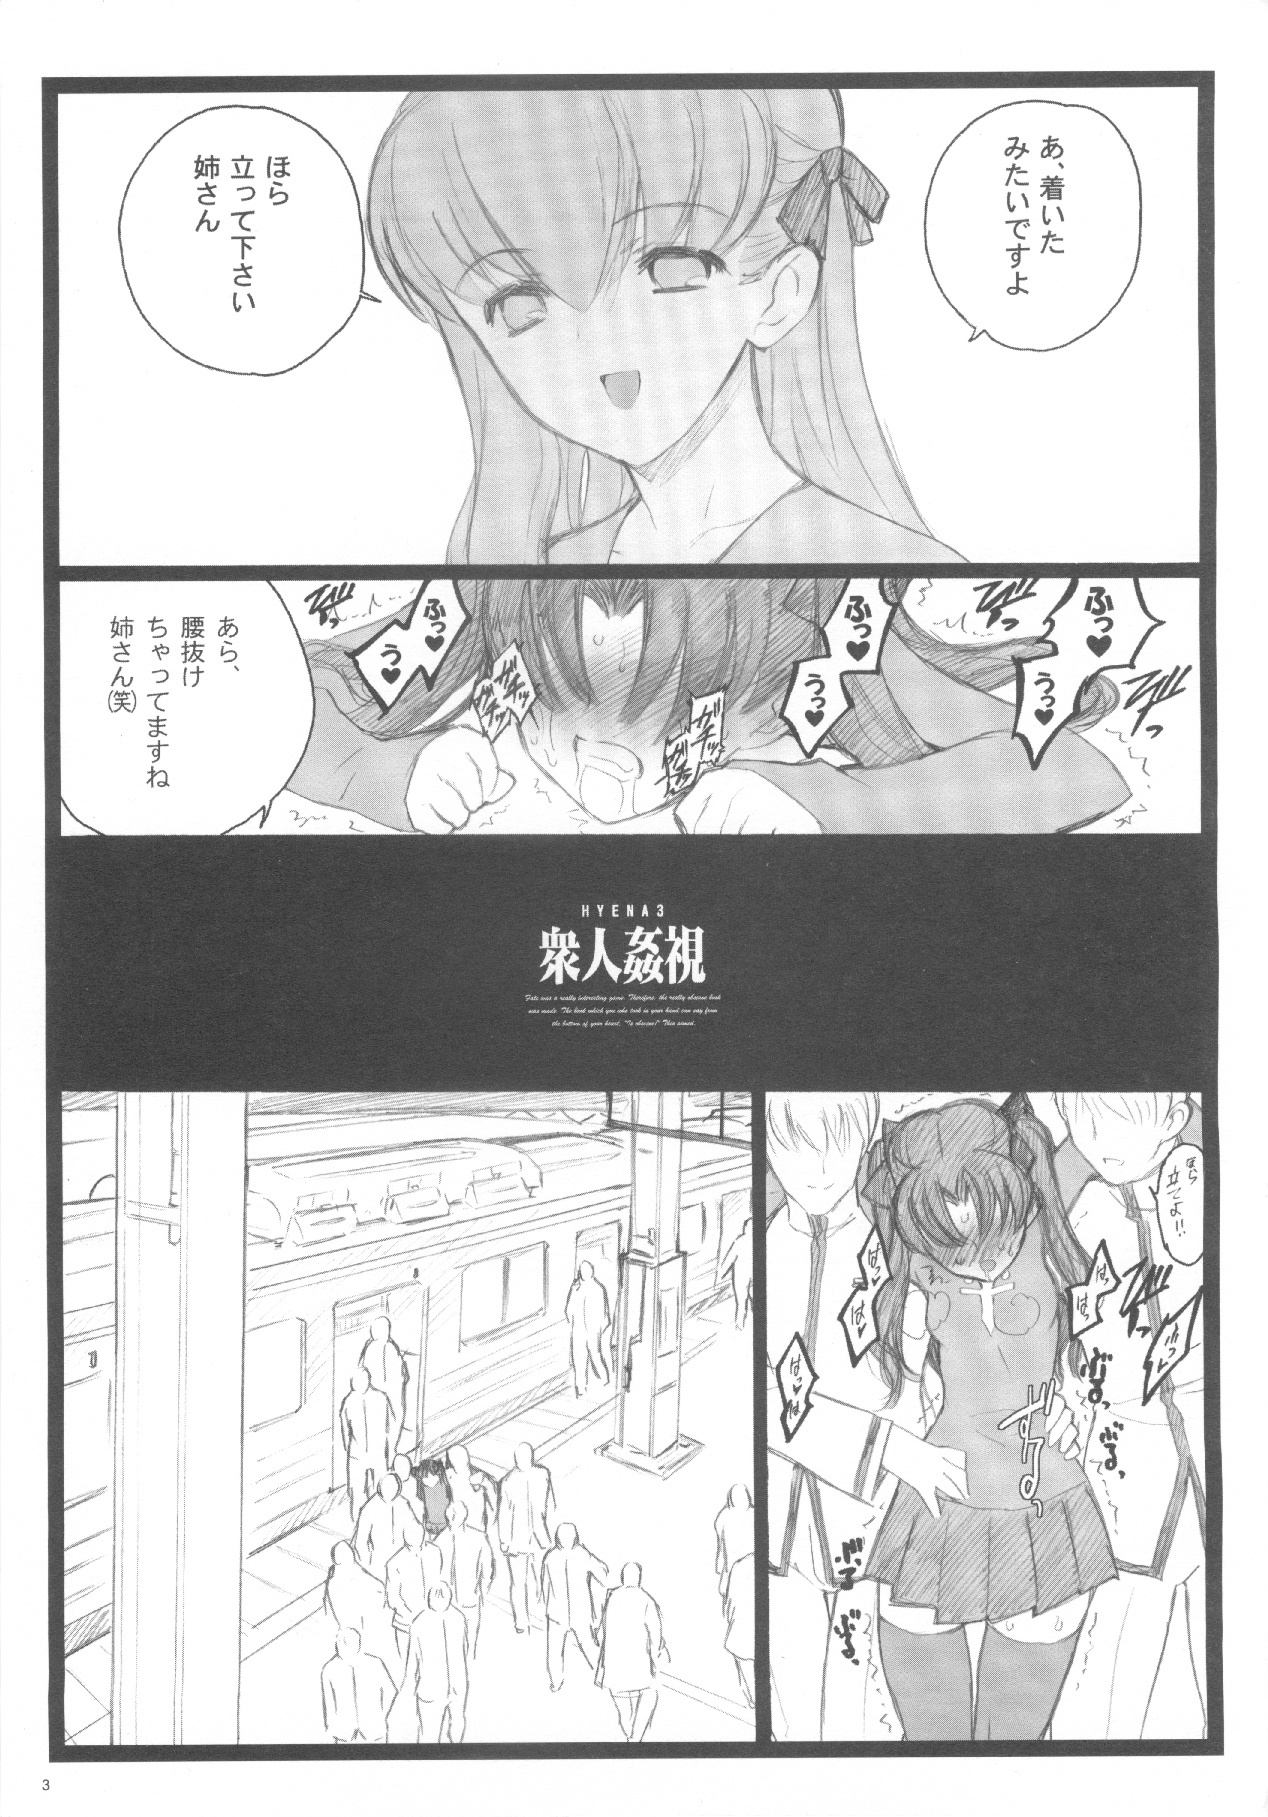 (C71) [Keumaya (Inoue Junichi)] Walpurugisnacht 3 / Walpurgis no Yoru 3 (Fate/stay night) page 2 full